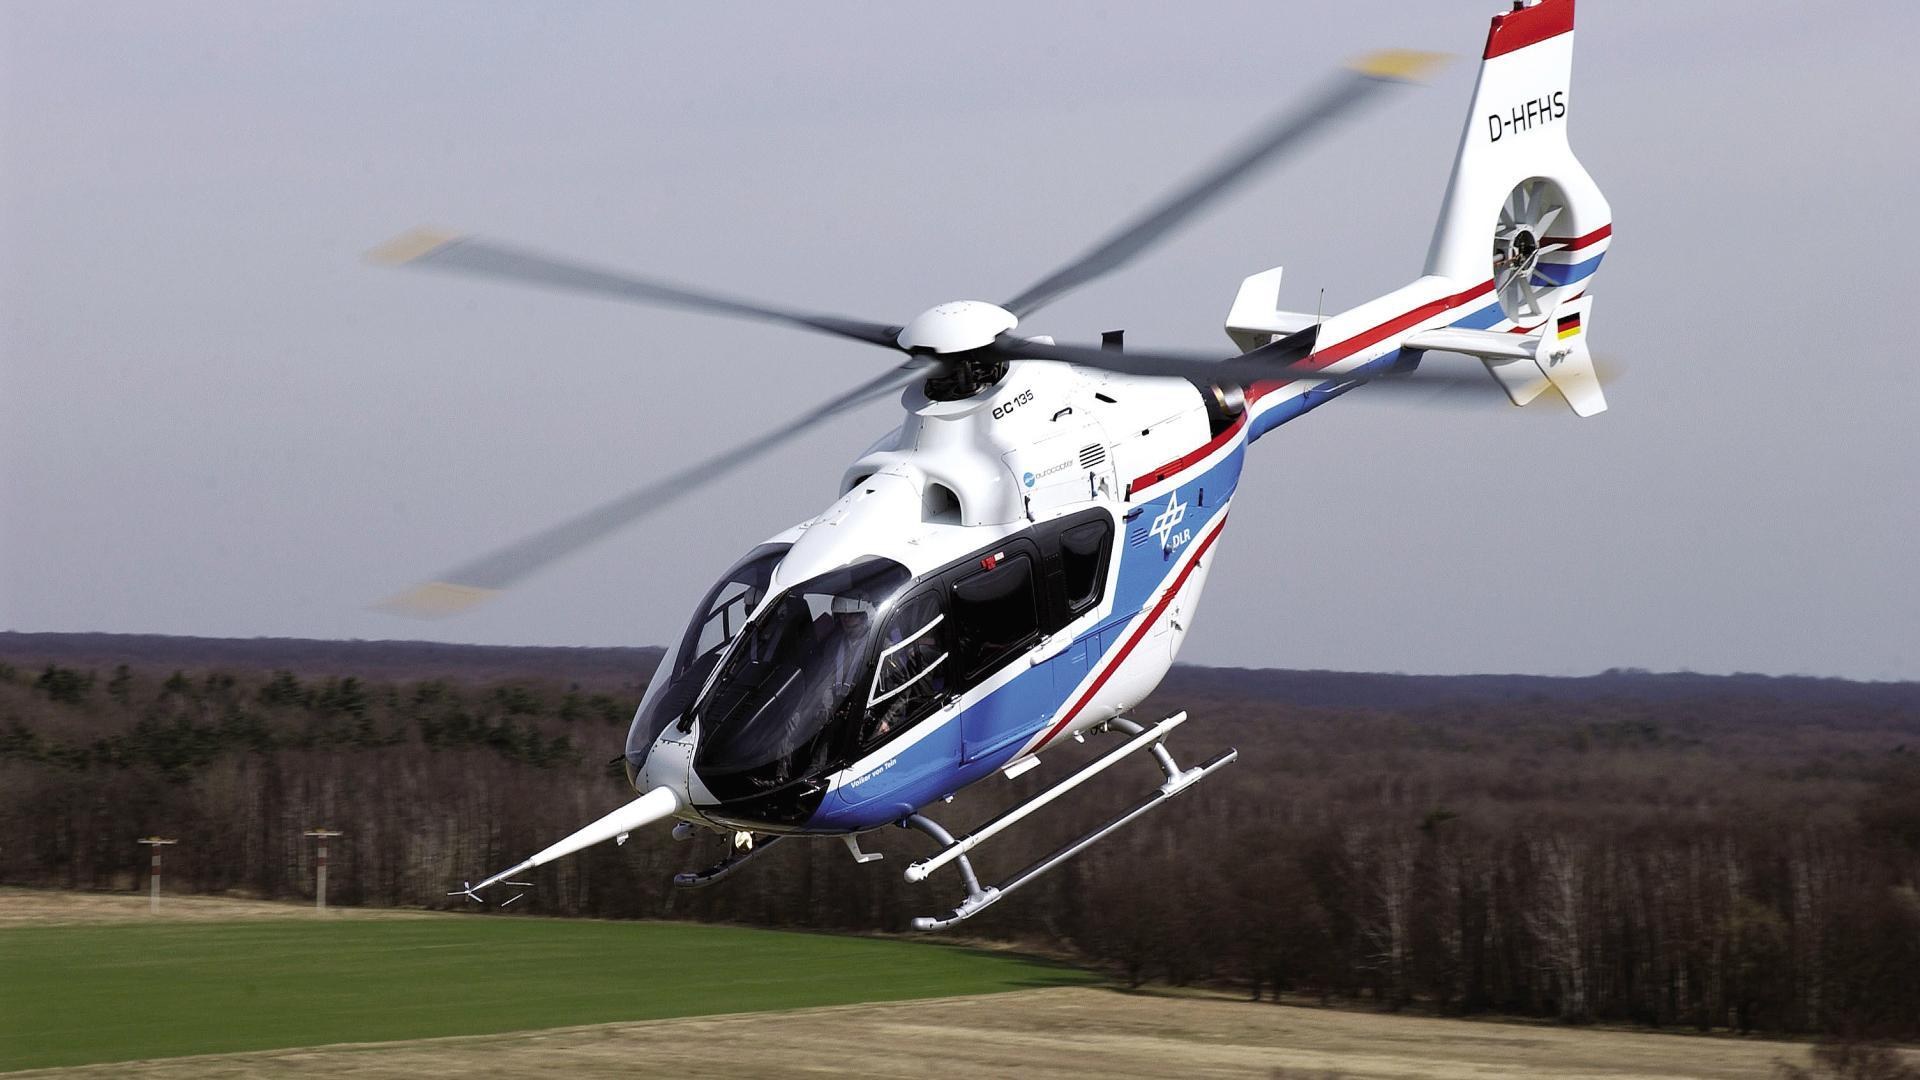 Cockpitscheiben, Rotoren sowie Leit- und Fahrwerke von Hubschraubern sind bei Vogelschlag oder Zusammenstößen mit Drohnen besonders gefährdete Bauteile.